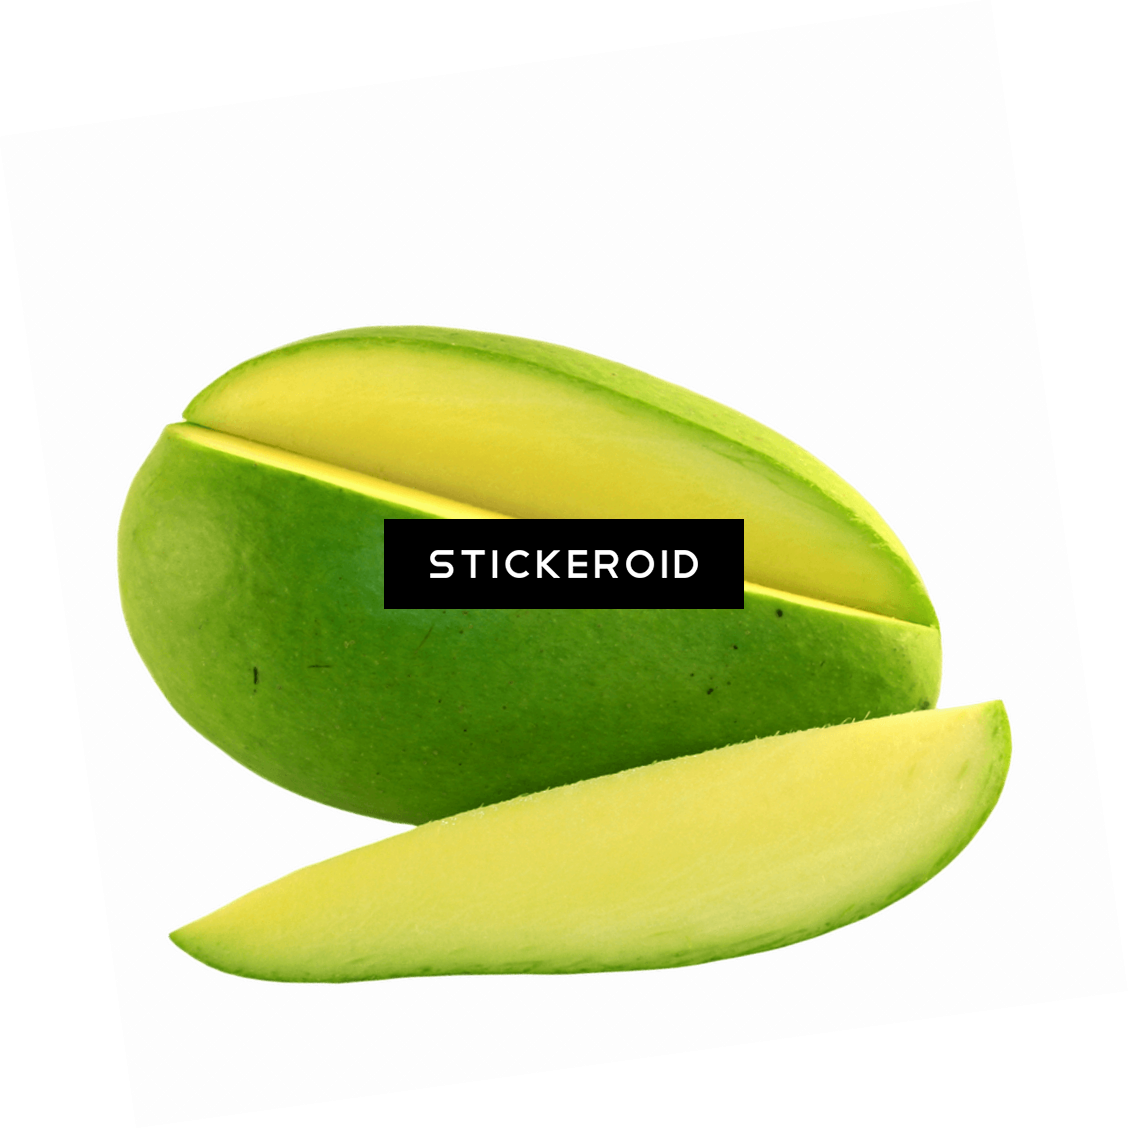 Green Mango Slice - Saba Banana (1128x1129), Png Download